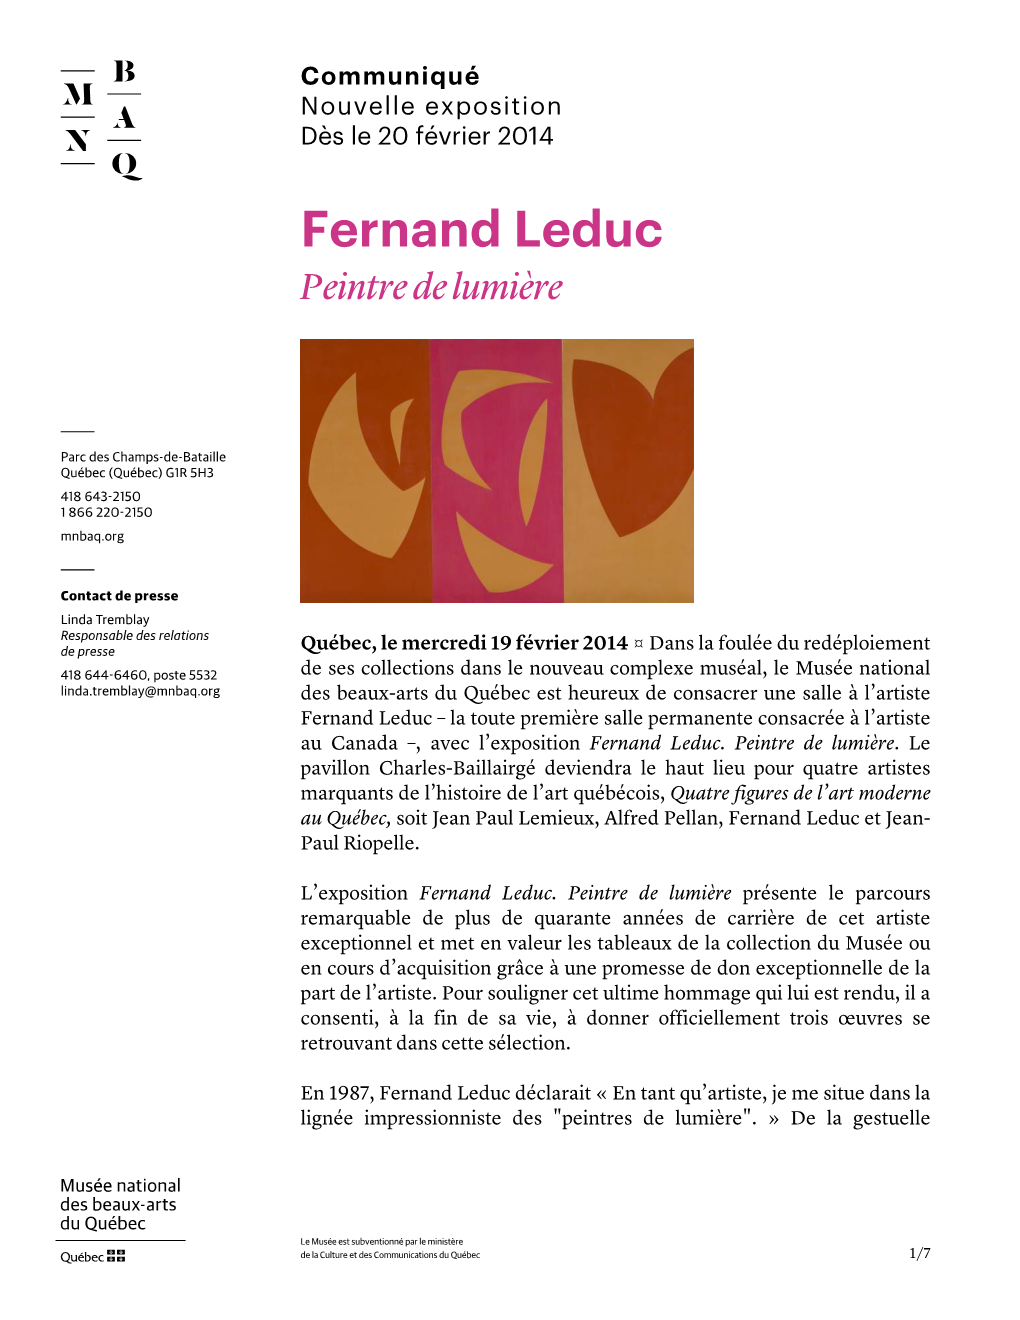 Fernand Leduc. Peintre De Lumière